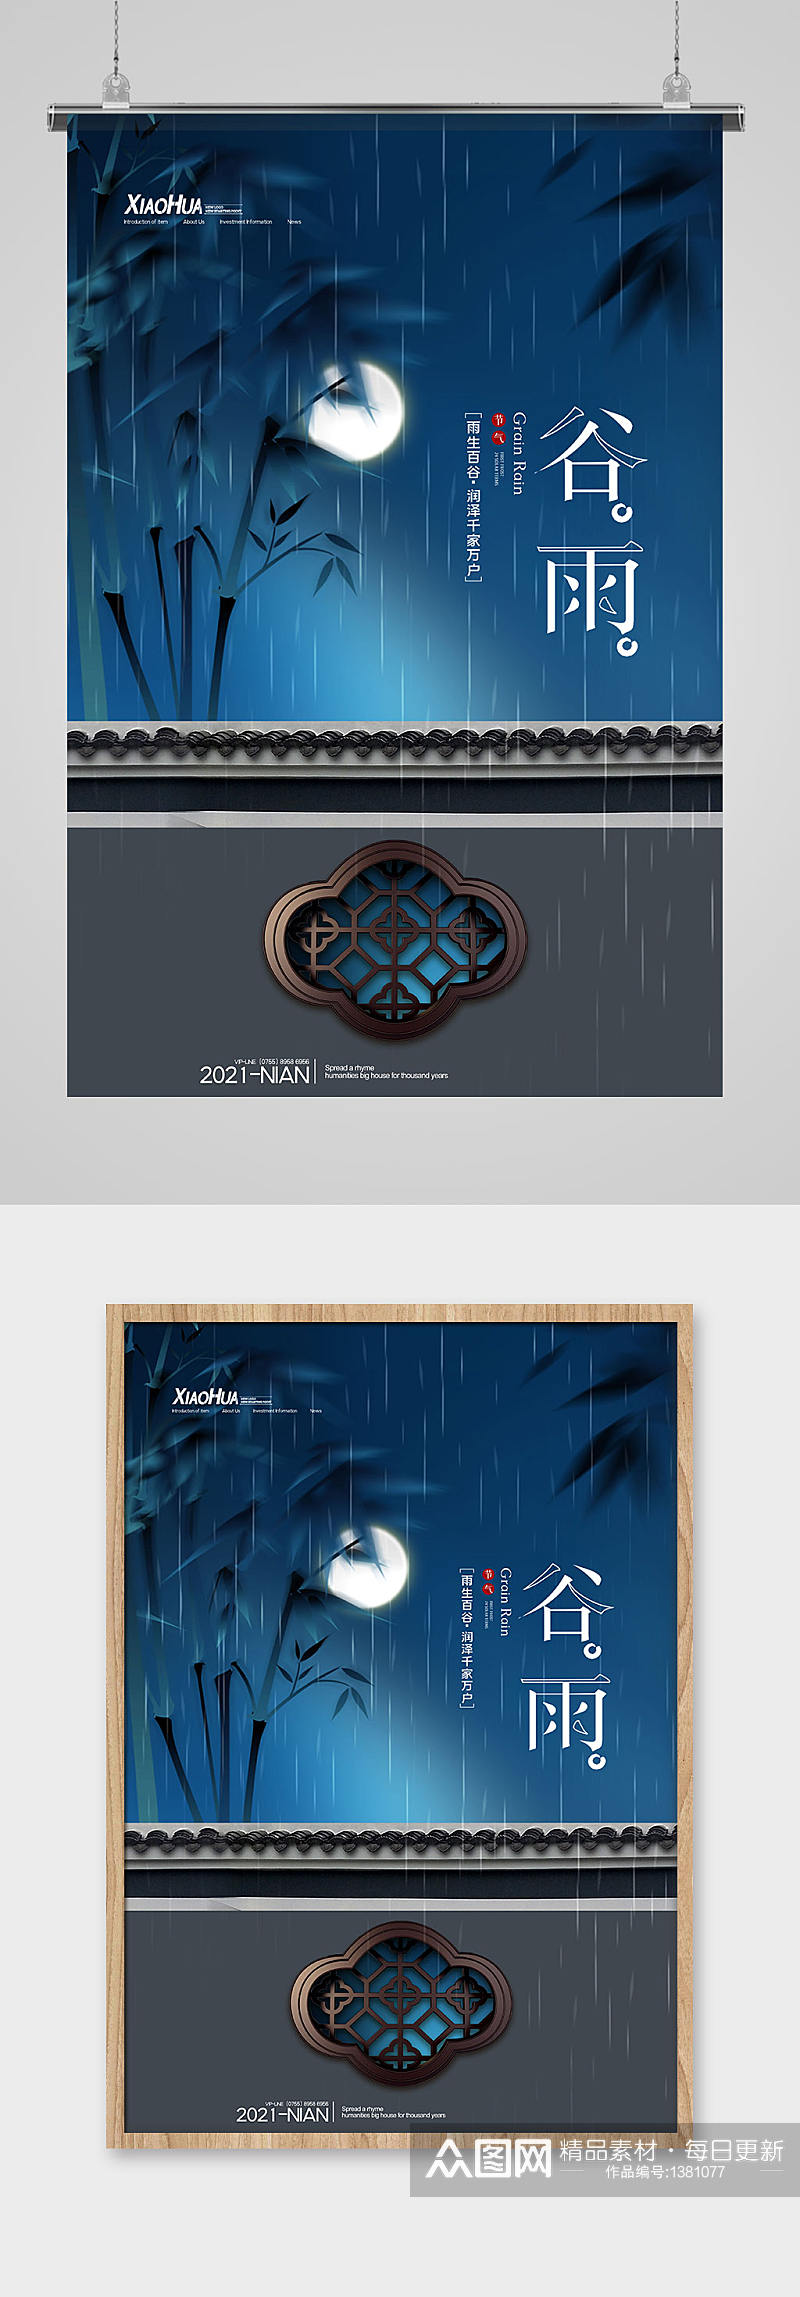 简约中式大气谷雨传统节日海报设计素材